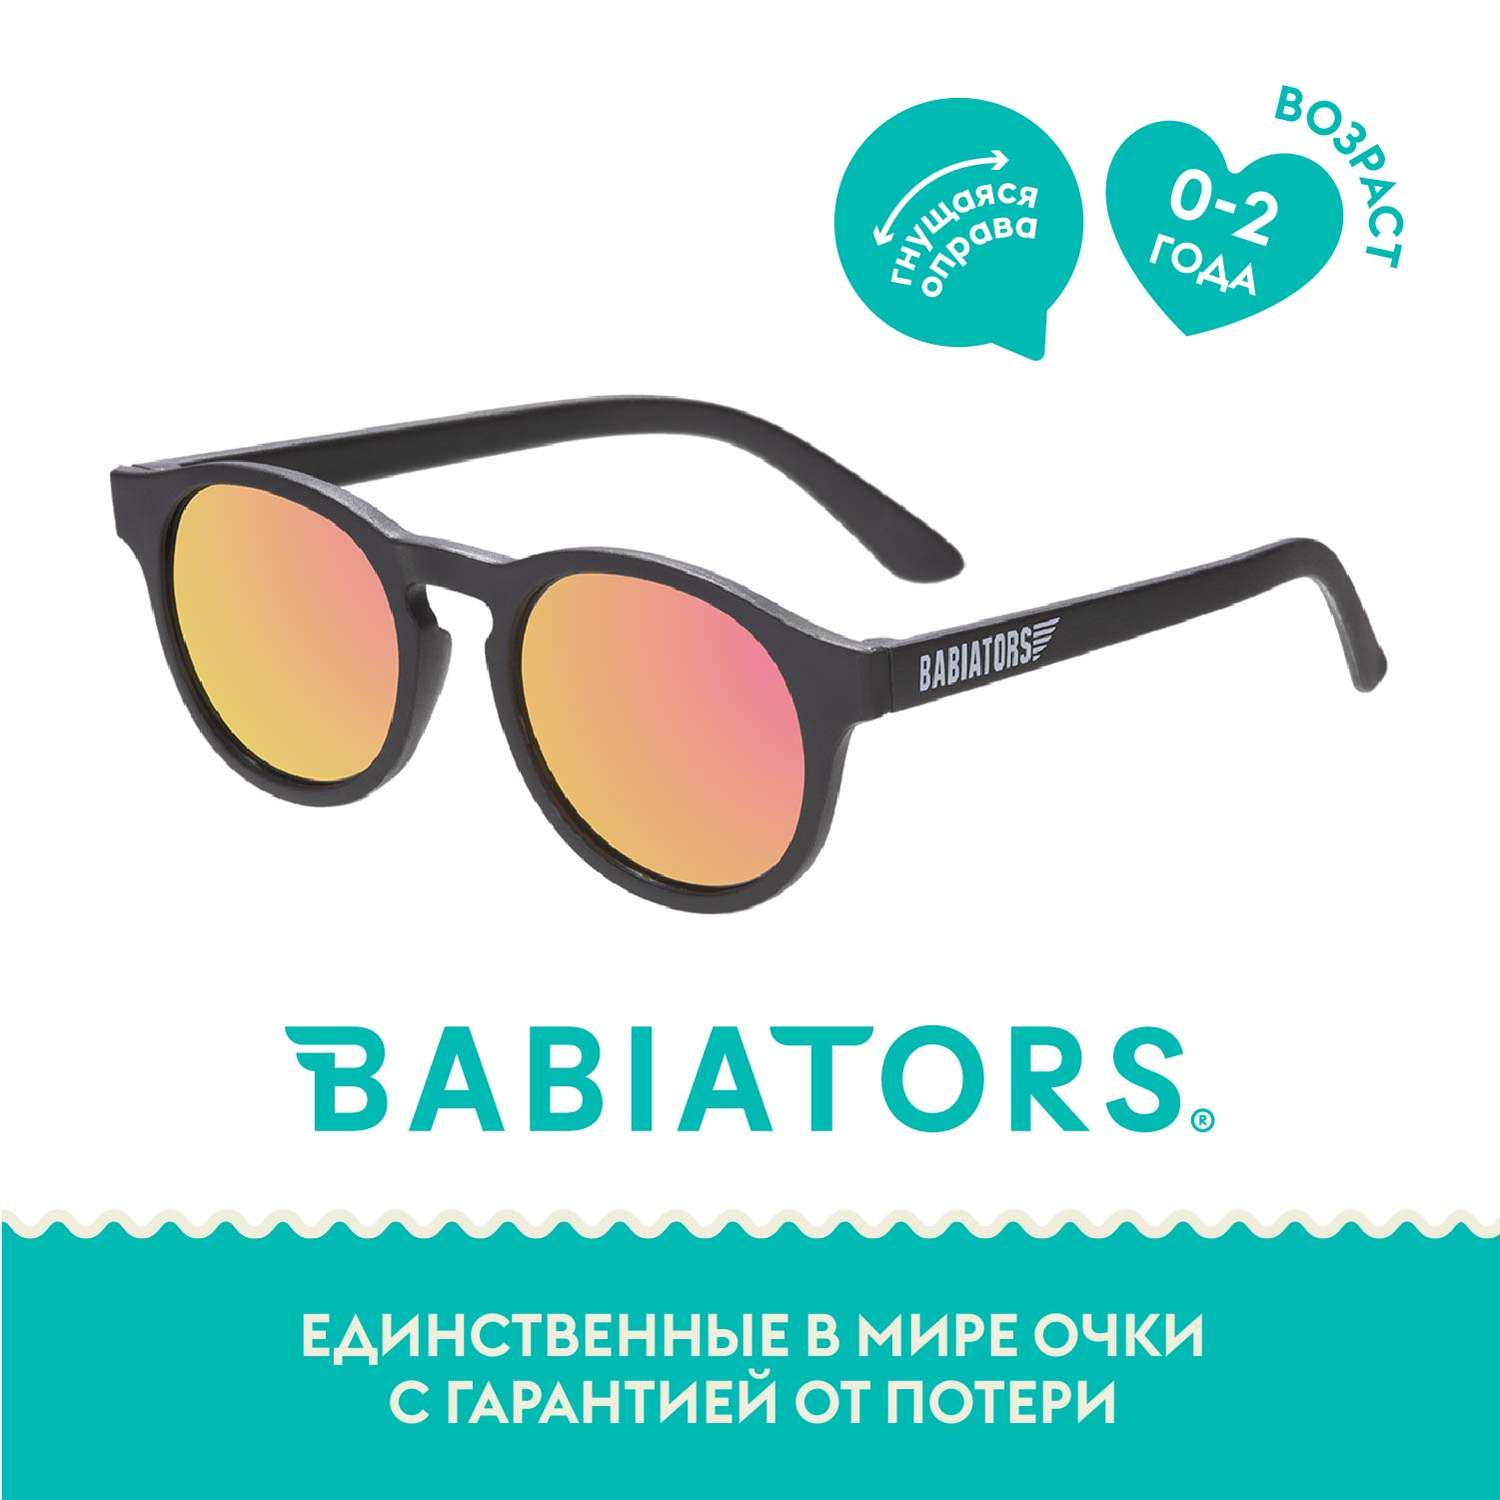 Солнцезащитные очки 0-2 Babiators KEY-019 - фото 1